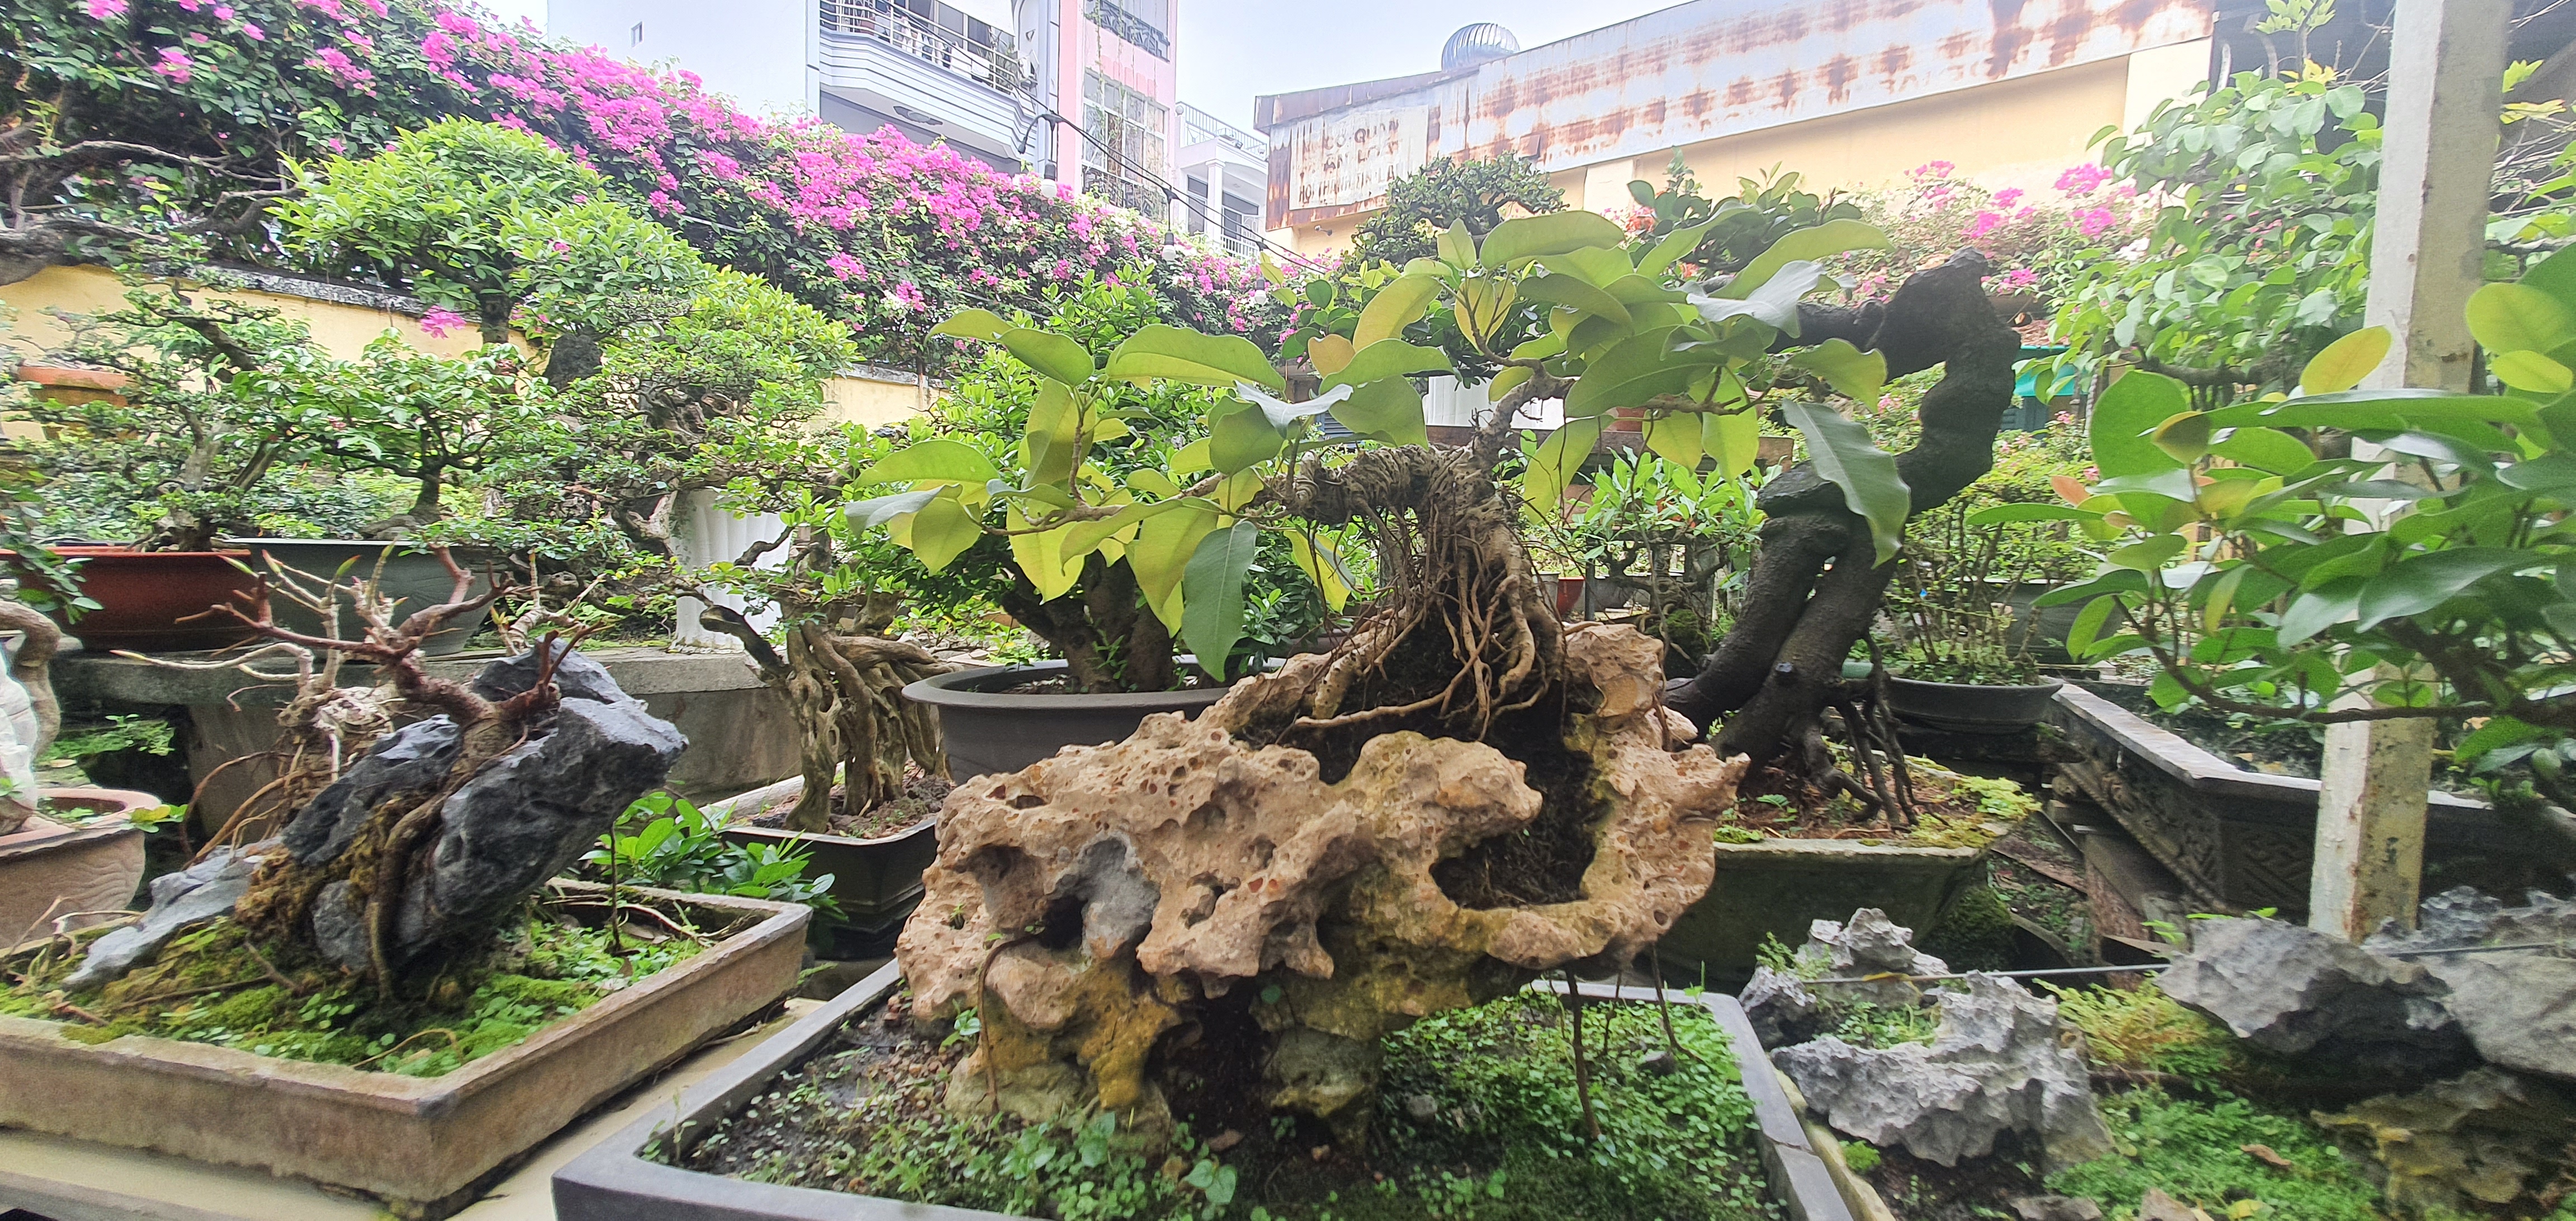 Vườn bonsai tiền tỉ giữa lòng TP.HCM của chàng trai 9X